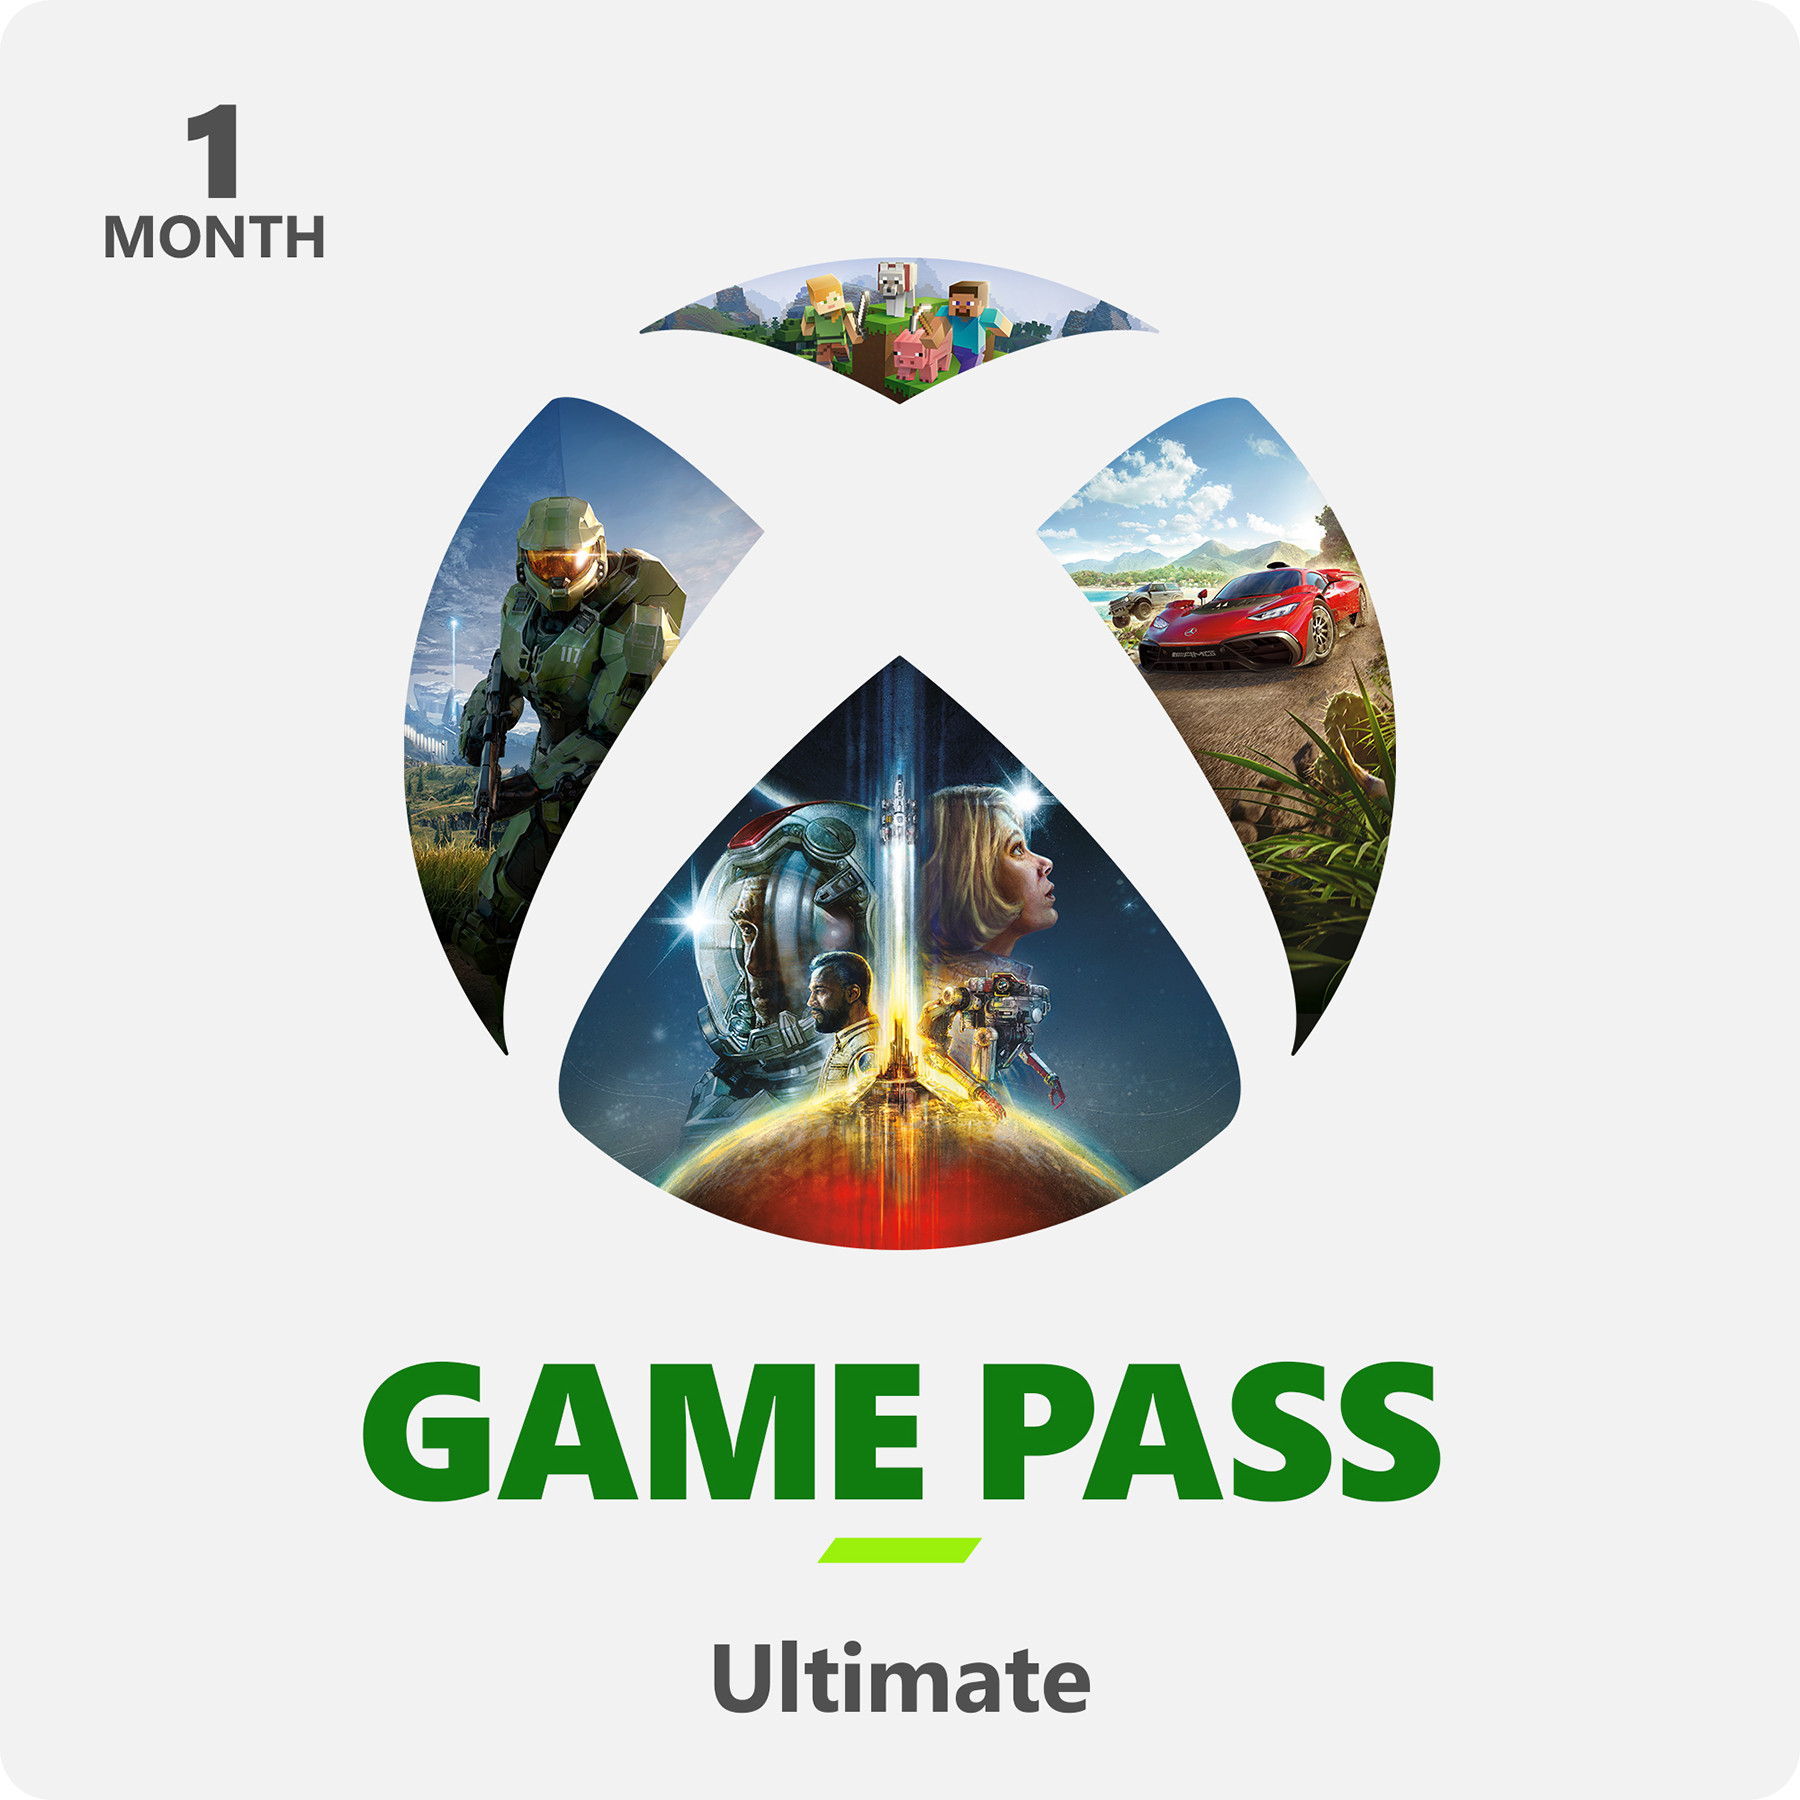 martelen vuilnis mini Nedgame gameshop: Xbox Live Game Pass Ultimate Online - 1 Maand (PC Gaming)  kopen